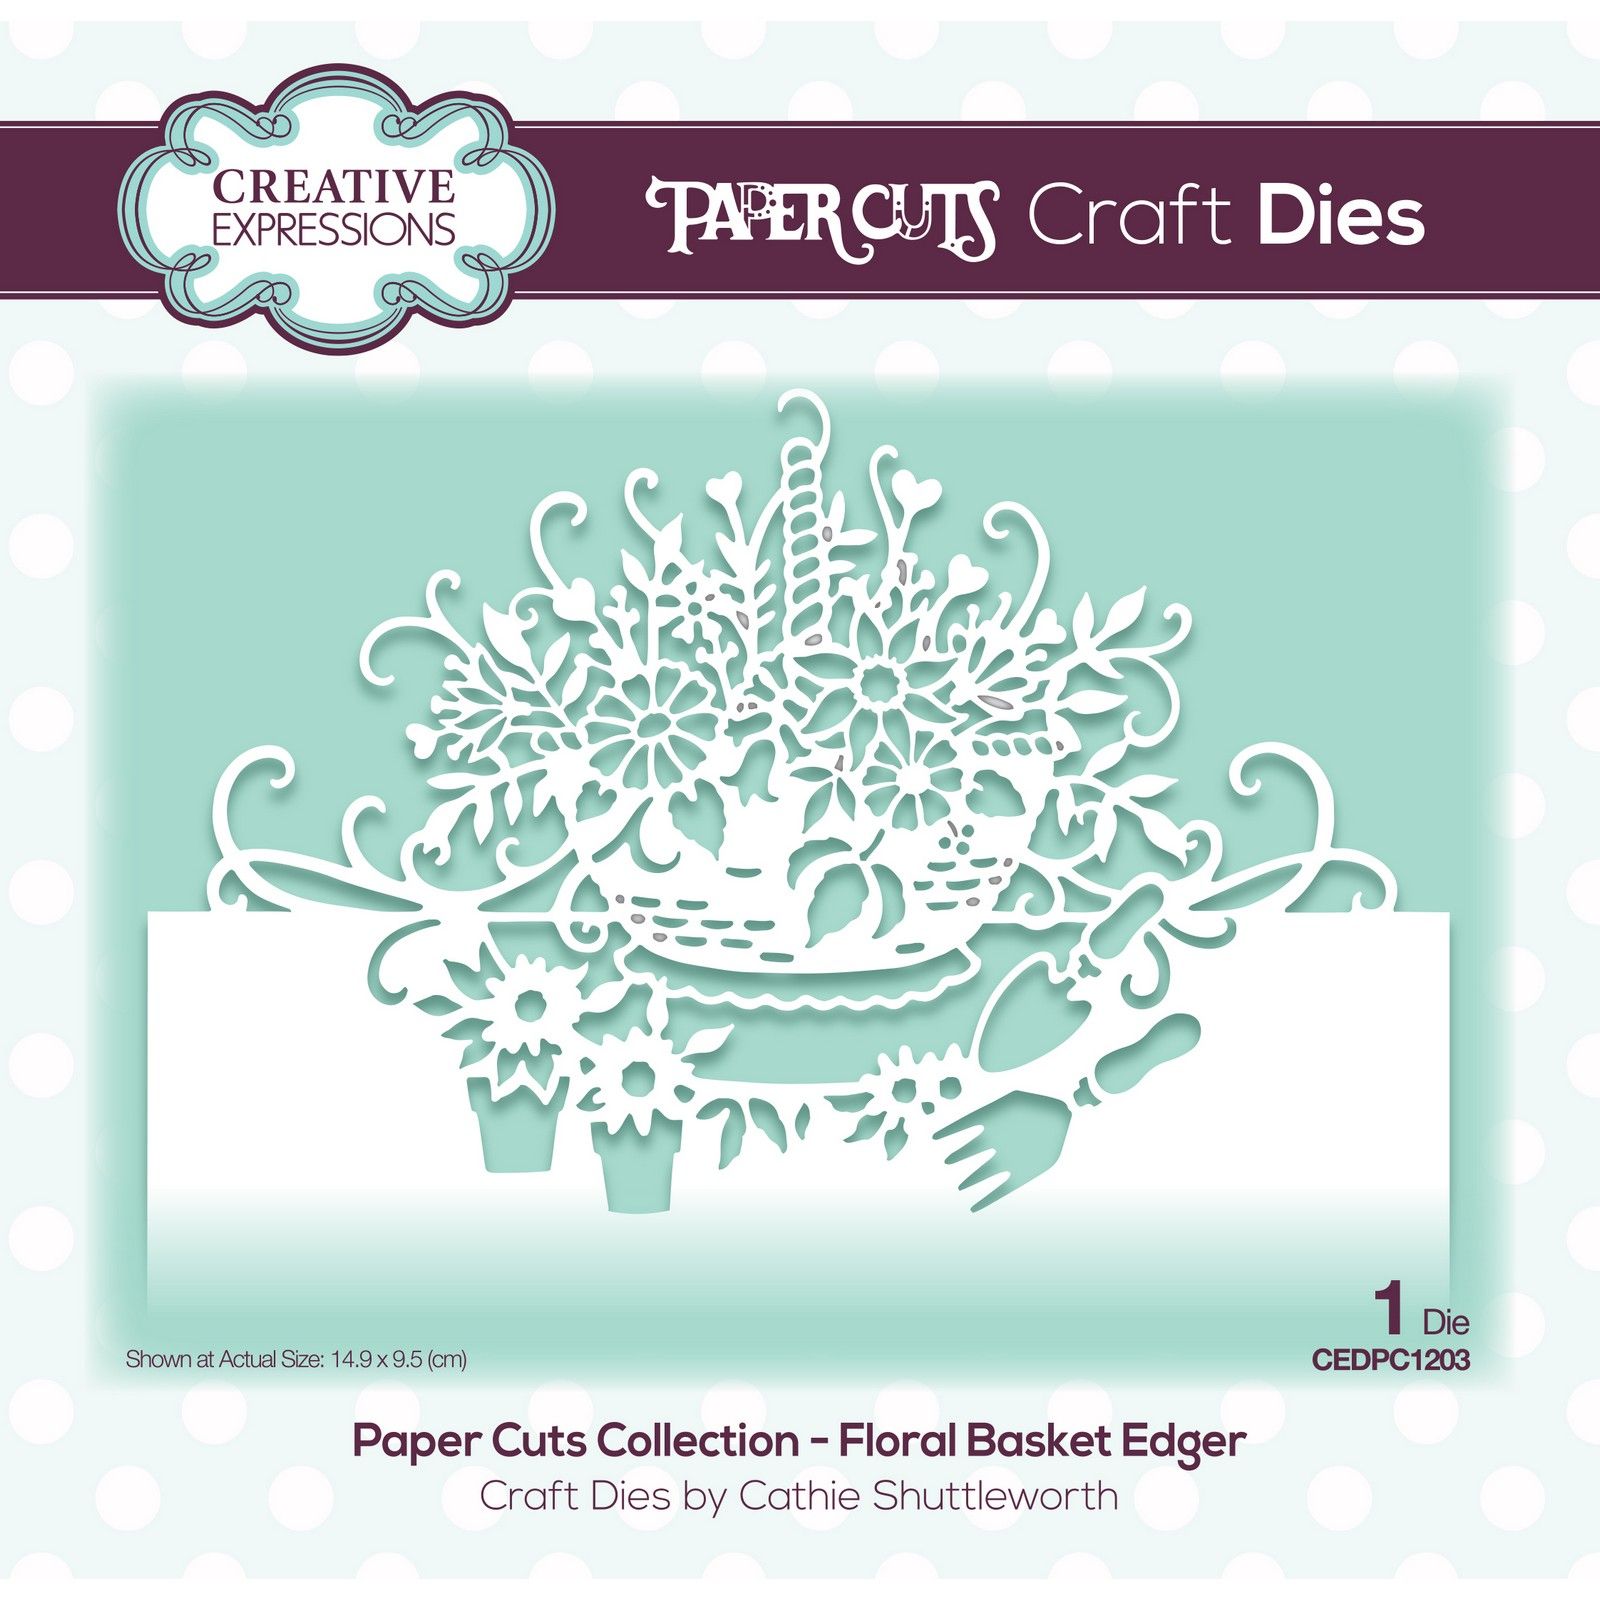 Paper Cuts • Craft Die Floral Basket Edger